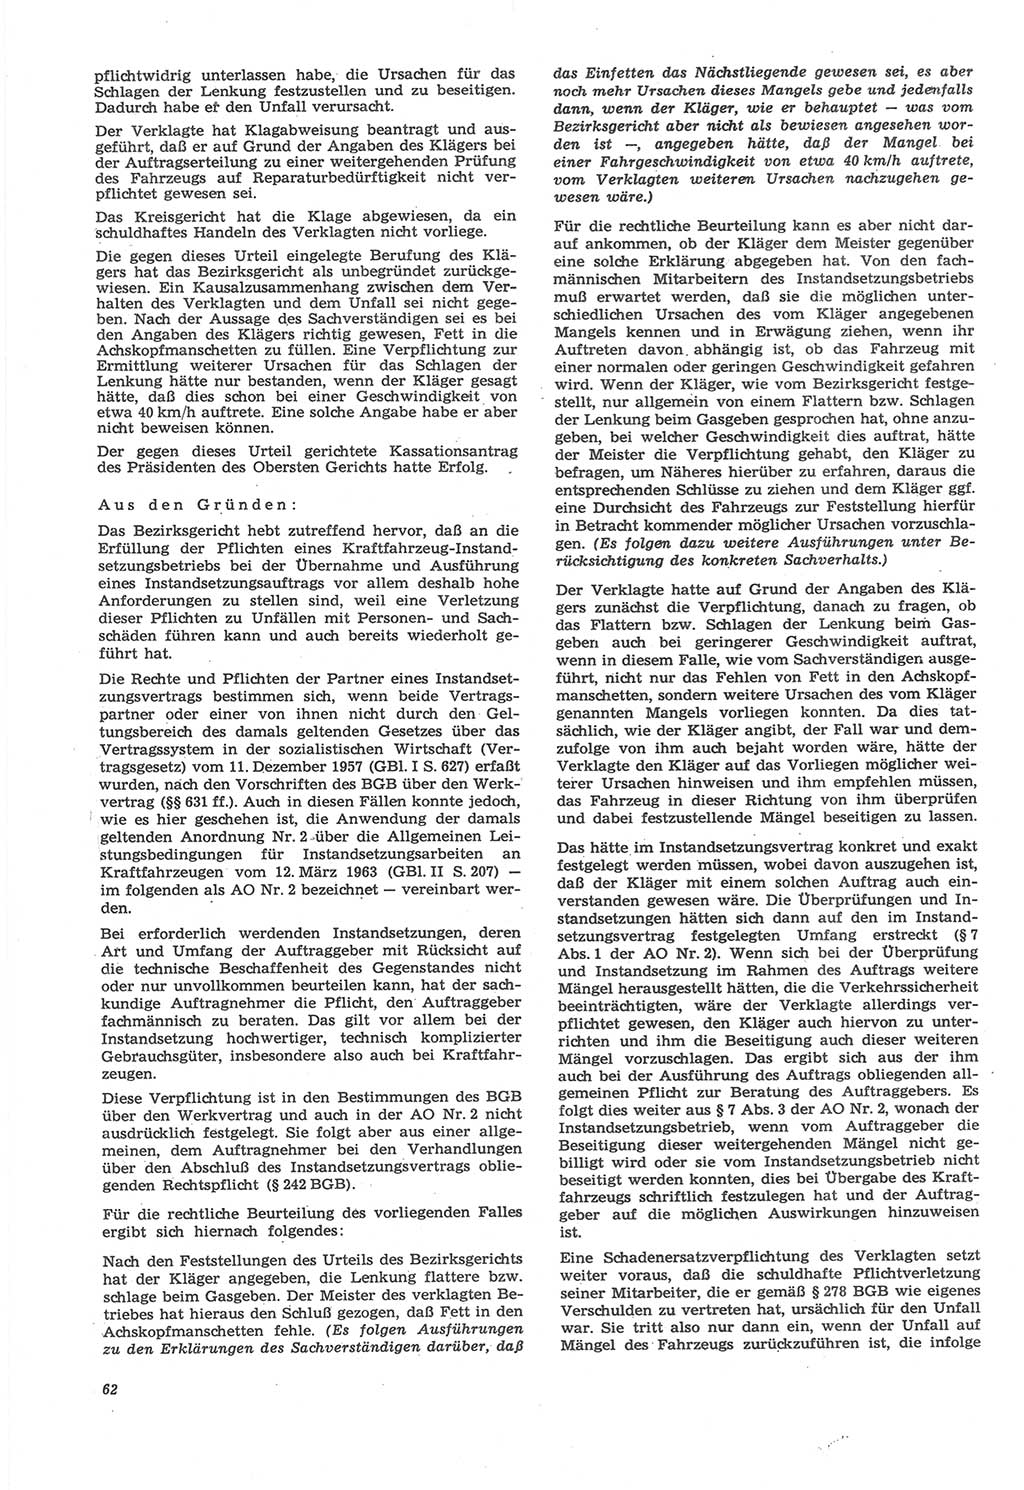 Neue Justiz (NJ), Zeitschrift für Recht und Rechtswissenschaft [Deutsche Demokratische Republik (DDR)], 22. Jahrgang 1968, Seite 62 (NJ DDR 1968, S. 62)